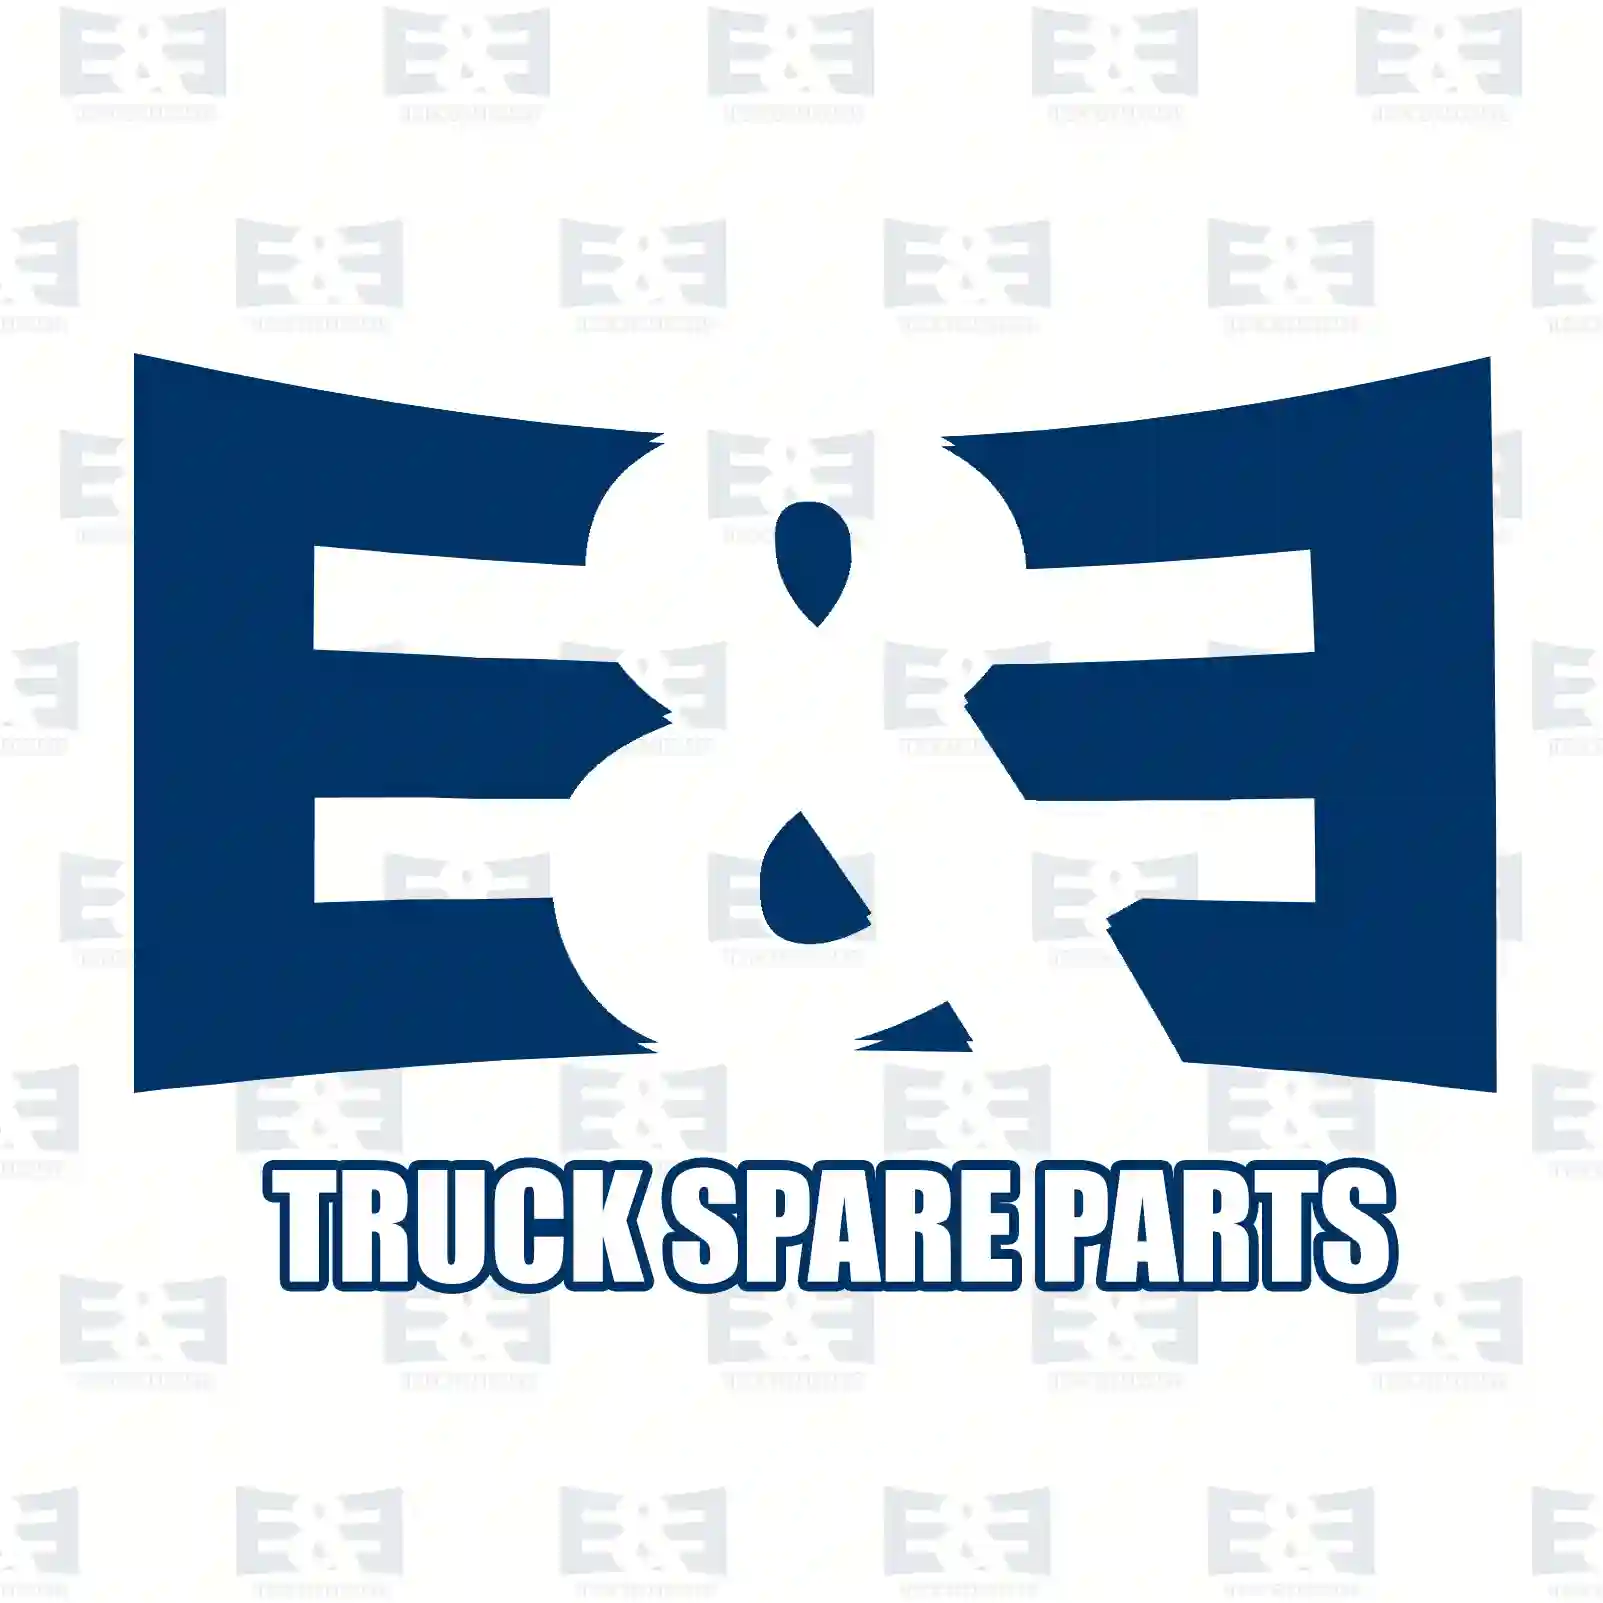 Unit injector, 2E2286002, 20440415, 3183295, 8113845 ||  2E2286002 E&E Truck Spare Parts | Truck Spare Parts, Auotomotive Spare Parts Unit injector, 2E2286002, 20440415, 3183295, 8113845 ||  2E2286002 E&E Truck Spare Parts | Truck Spare Parts, Auotomotive Spare Parts